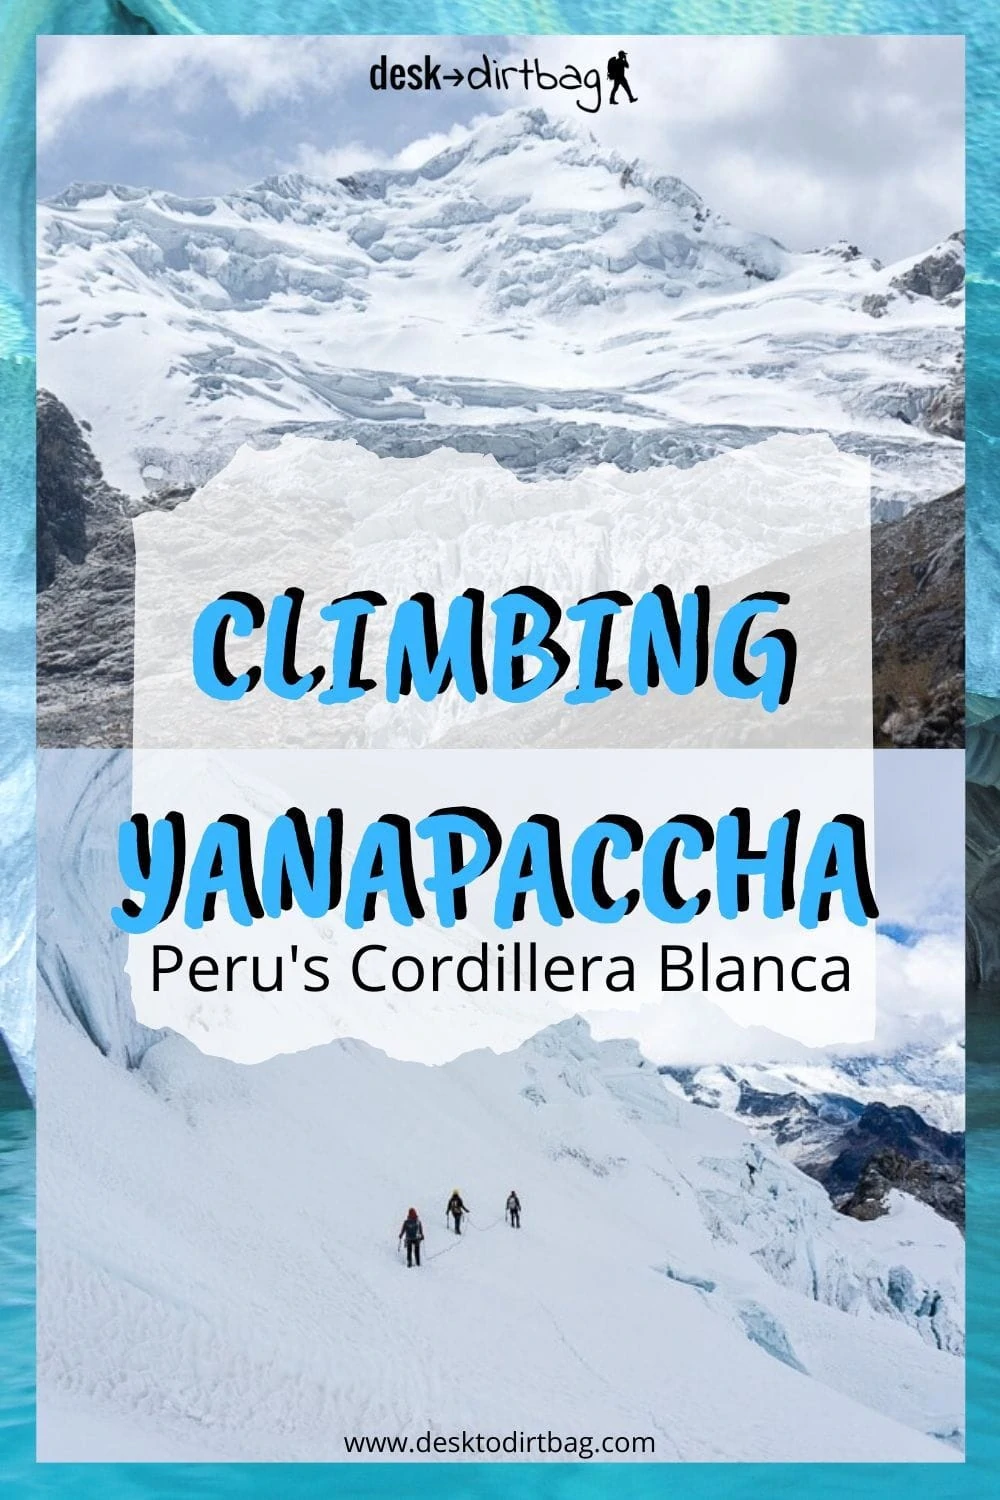 Mountain Climbing in Peru - Yanapaccha in the Cordillera Blanca trip-reports, travel, south-america, peru, alpine